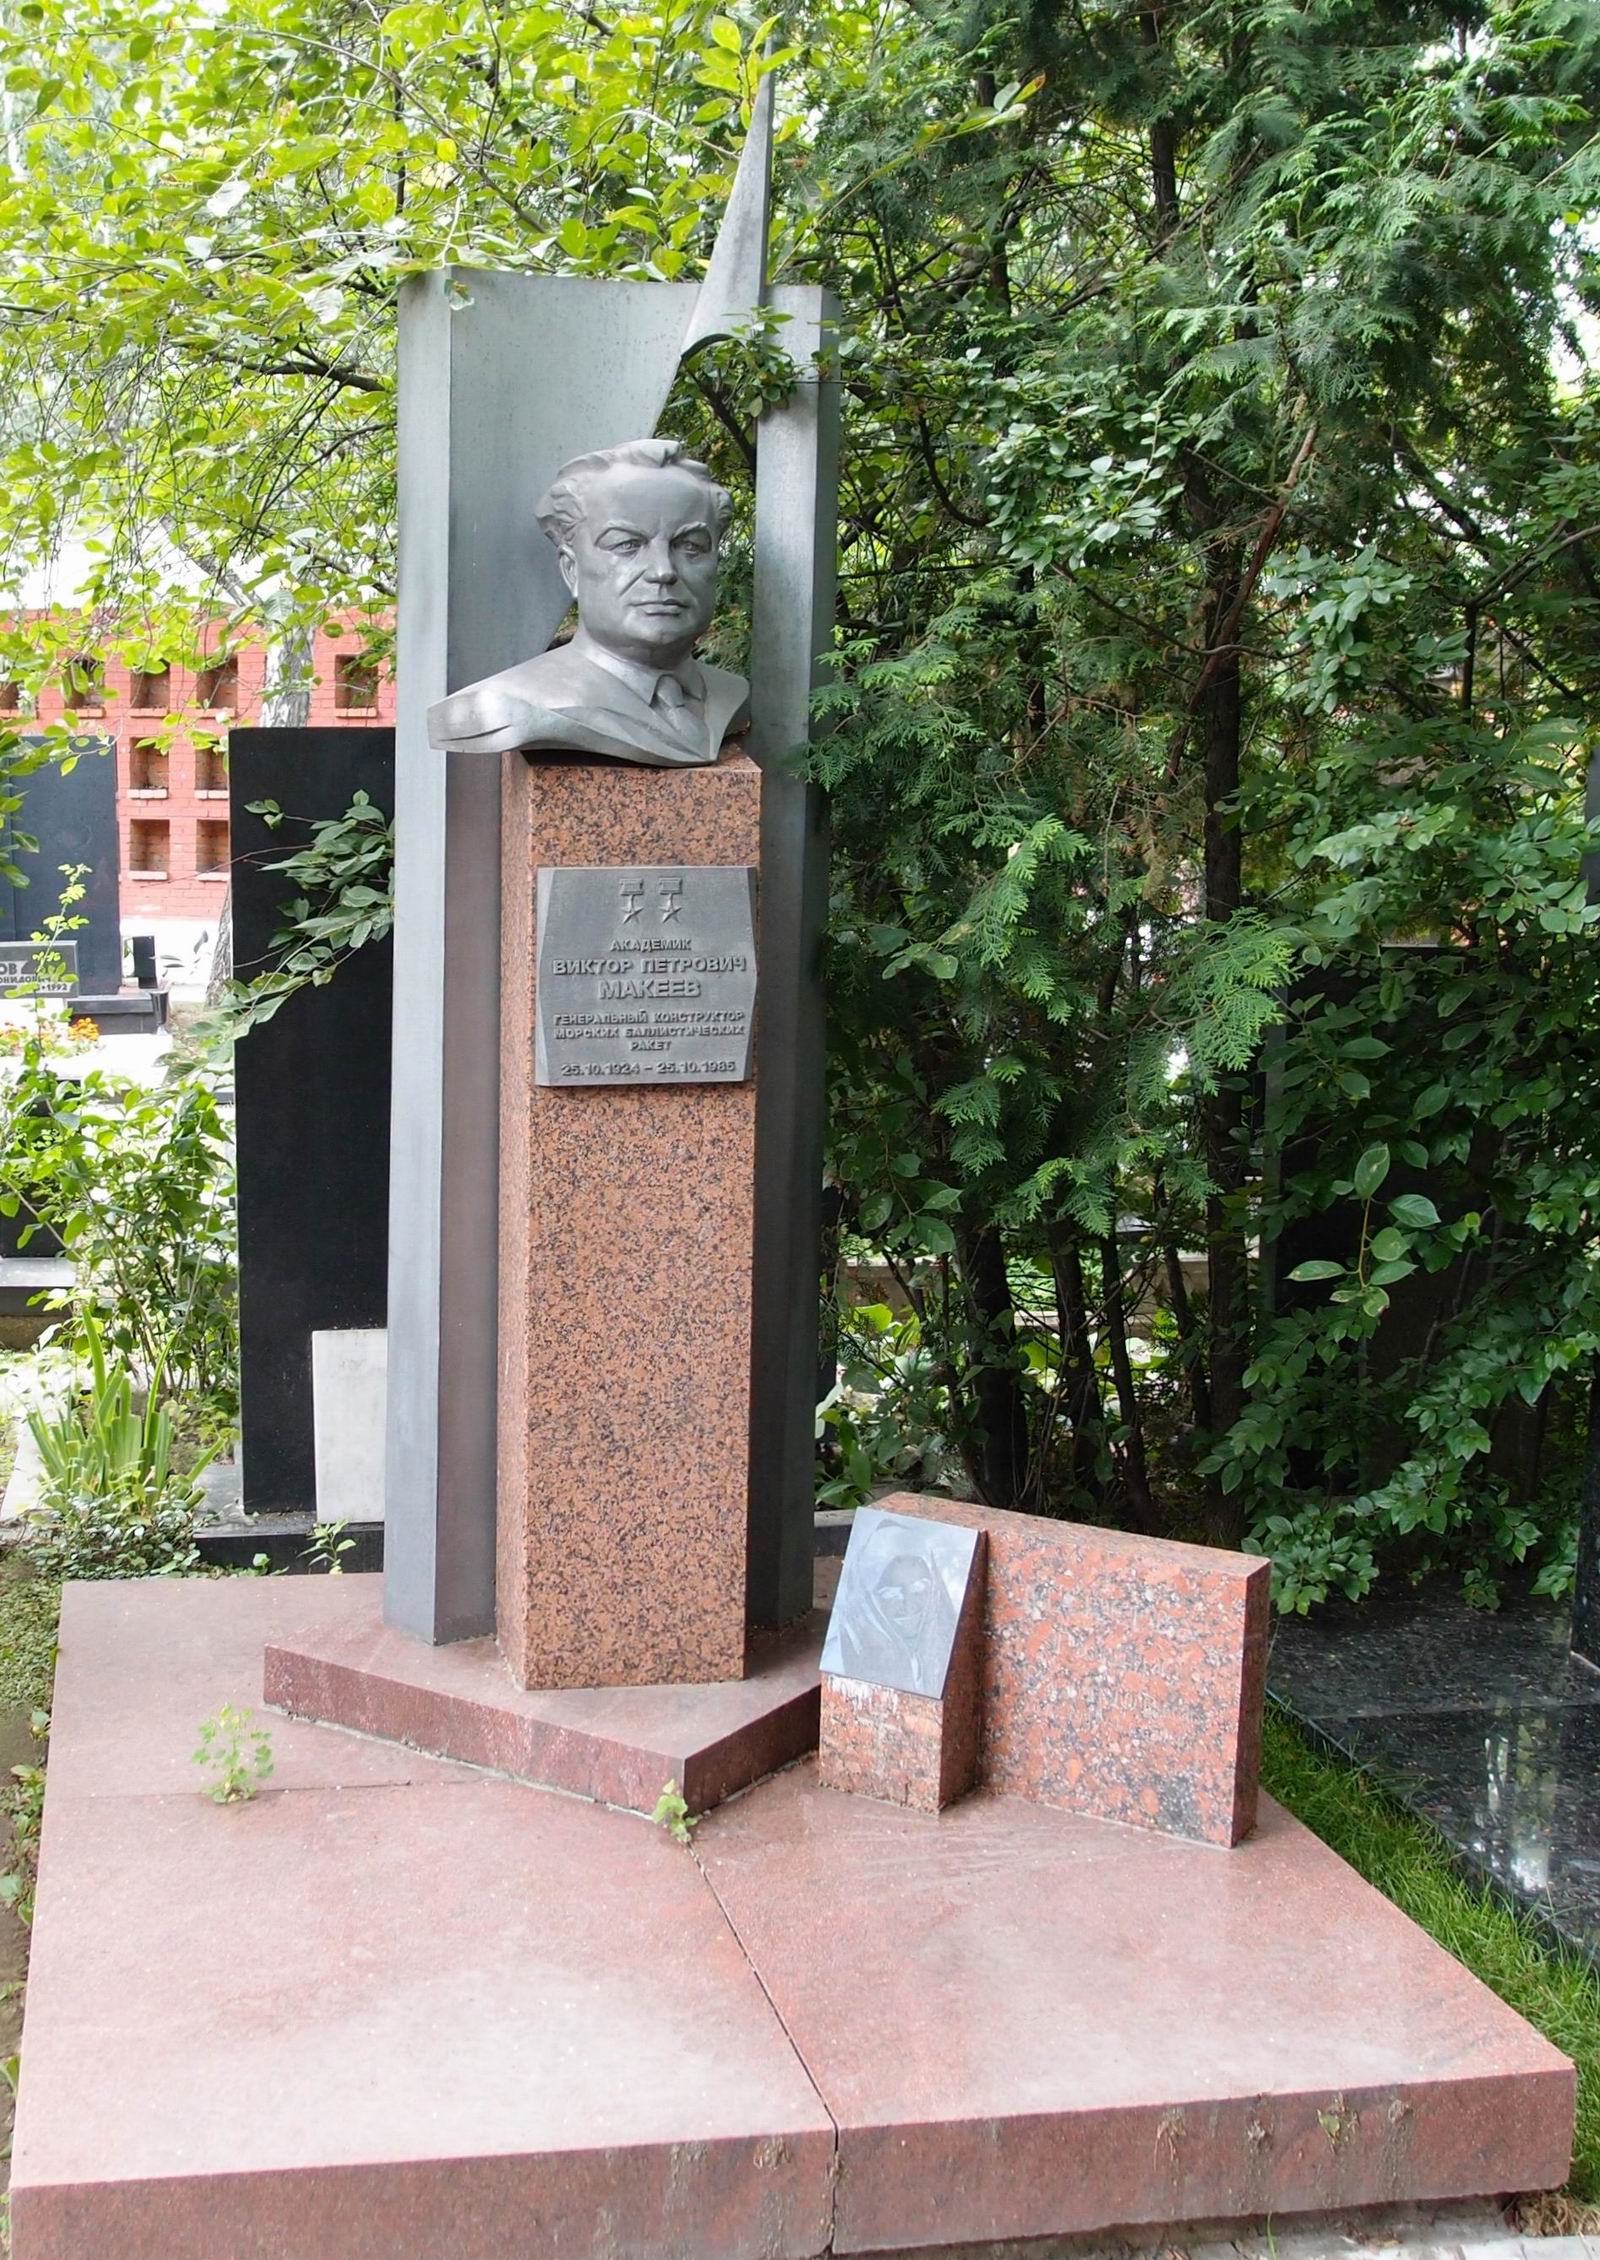 Памятник на могиле Макеева В.П. (1924-1985), ск. Г.Франгулян, на Новодевичьем кладбище (10-3-5). Нажмите левую кнопку мыши чтобы увидеть фрагмент памятника.